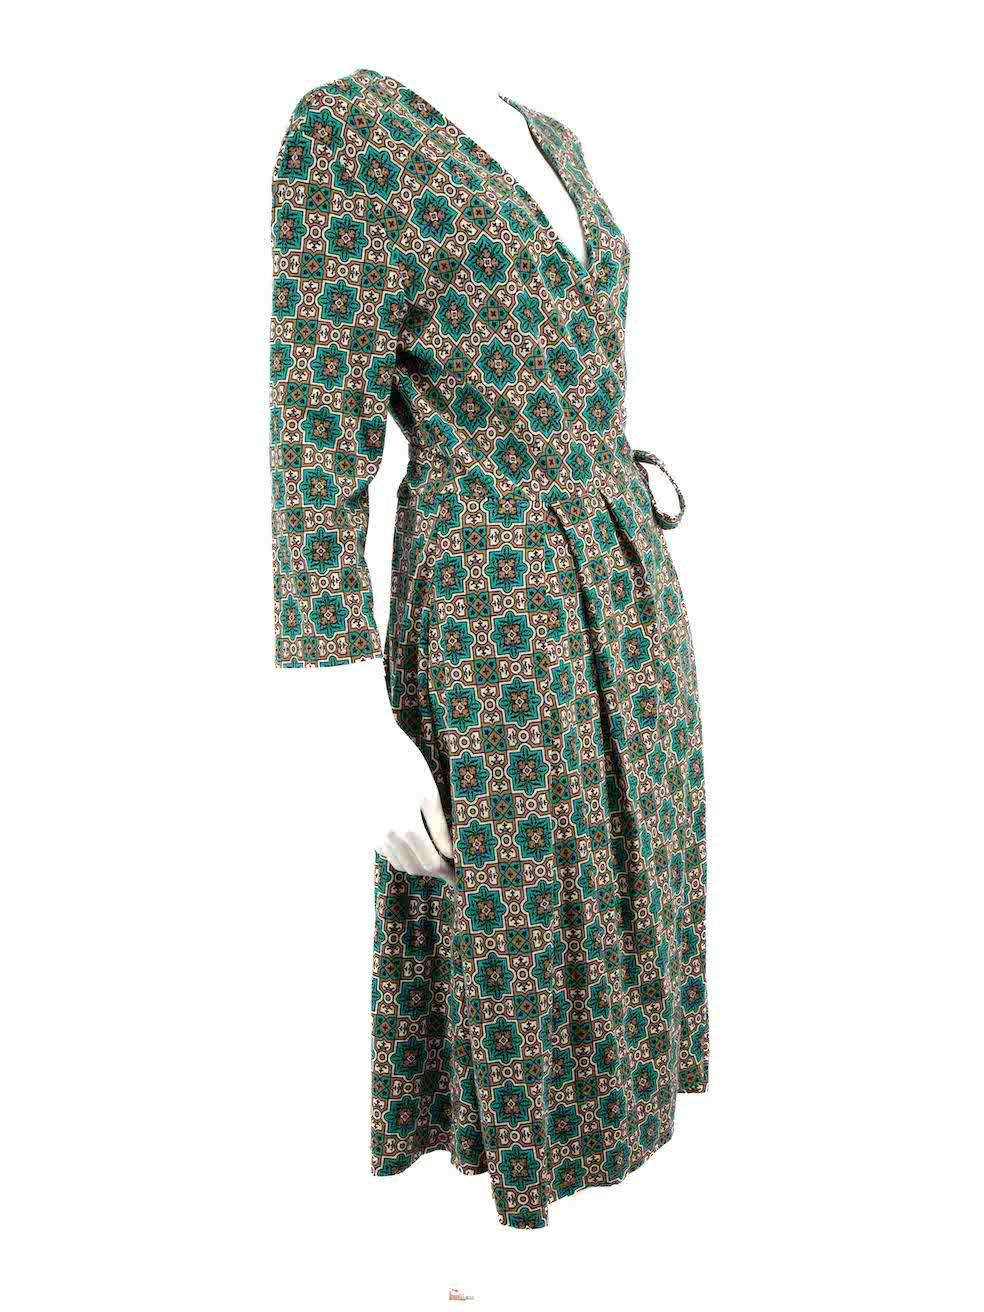 CONDITION ist nie getragen, mit Tags. Keine sichtbaren Abnutzungserscheinungen am Kleid sind bei diesem neuen Weekend Max Mara Designer-Wiederverkaufsartikel erkennbar.
 
 
 
 Einzelheiten
 
 
 Mehrfarbig - grün und braun
 
 Viskose-Jersey
 
